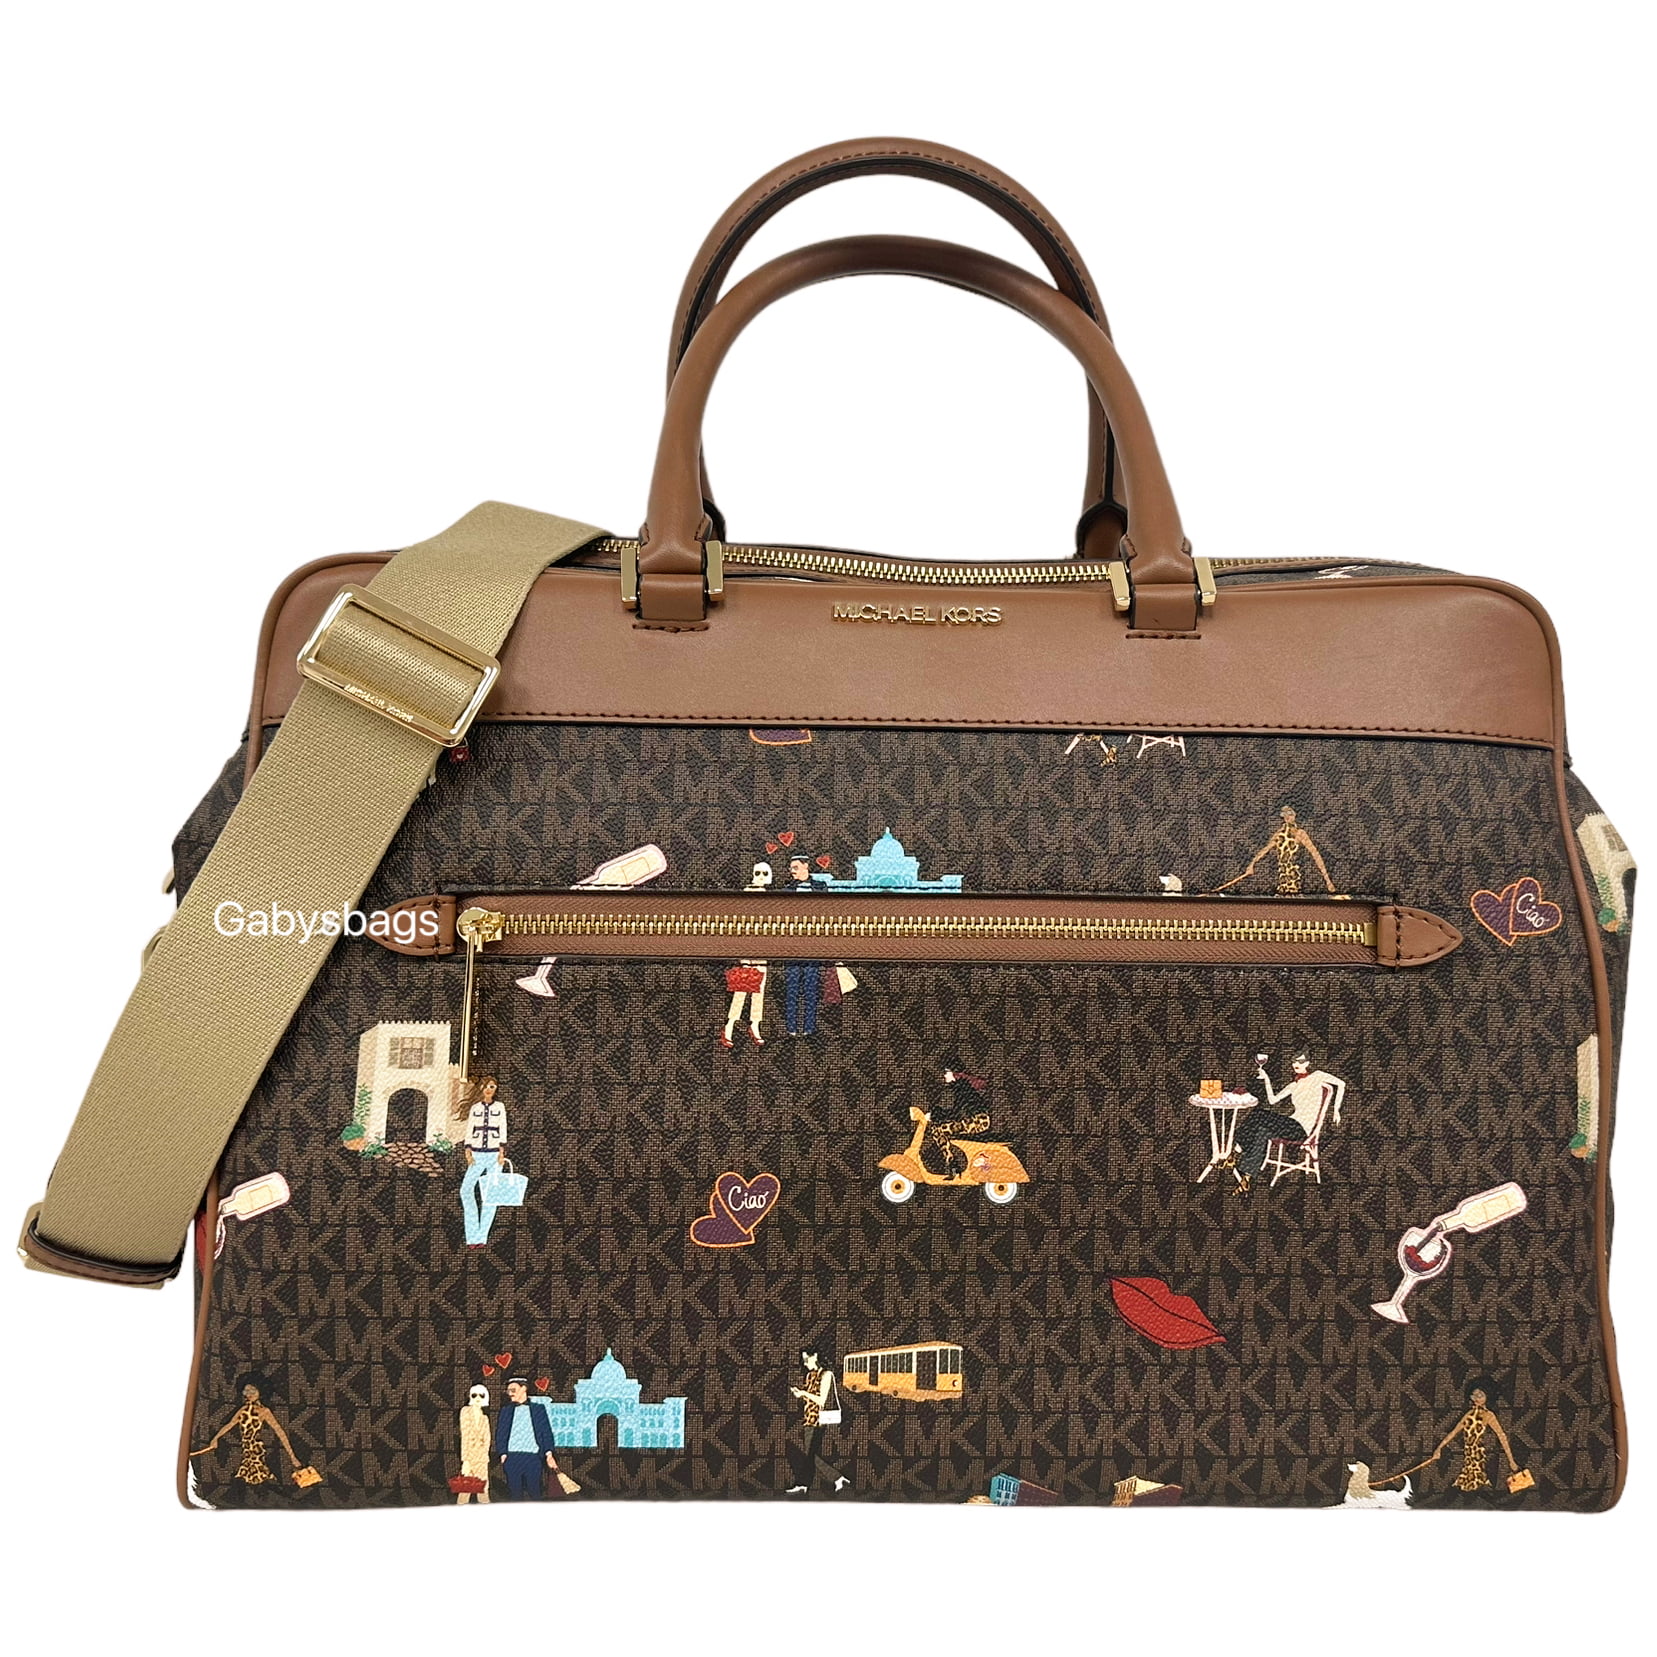 Michael Kors Large Weekender Travel Bag Brown - $145 - From Hannah